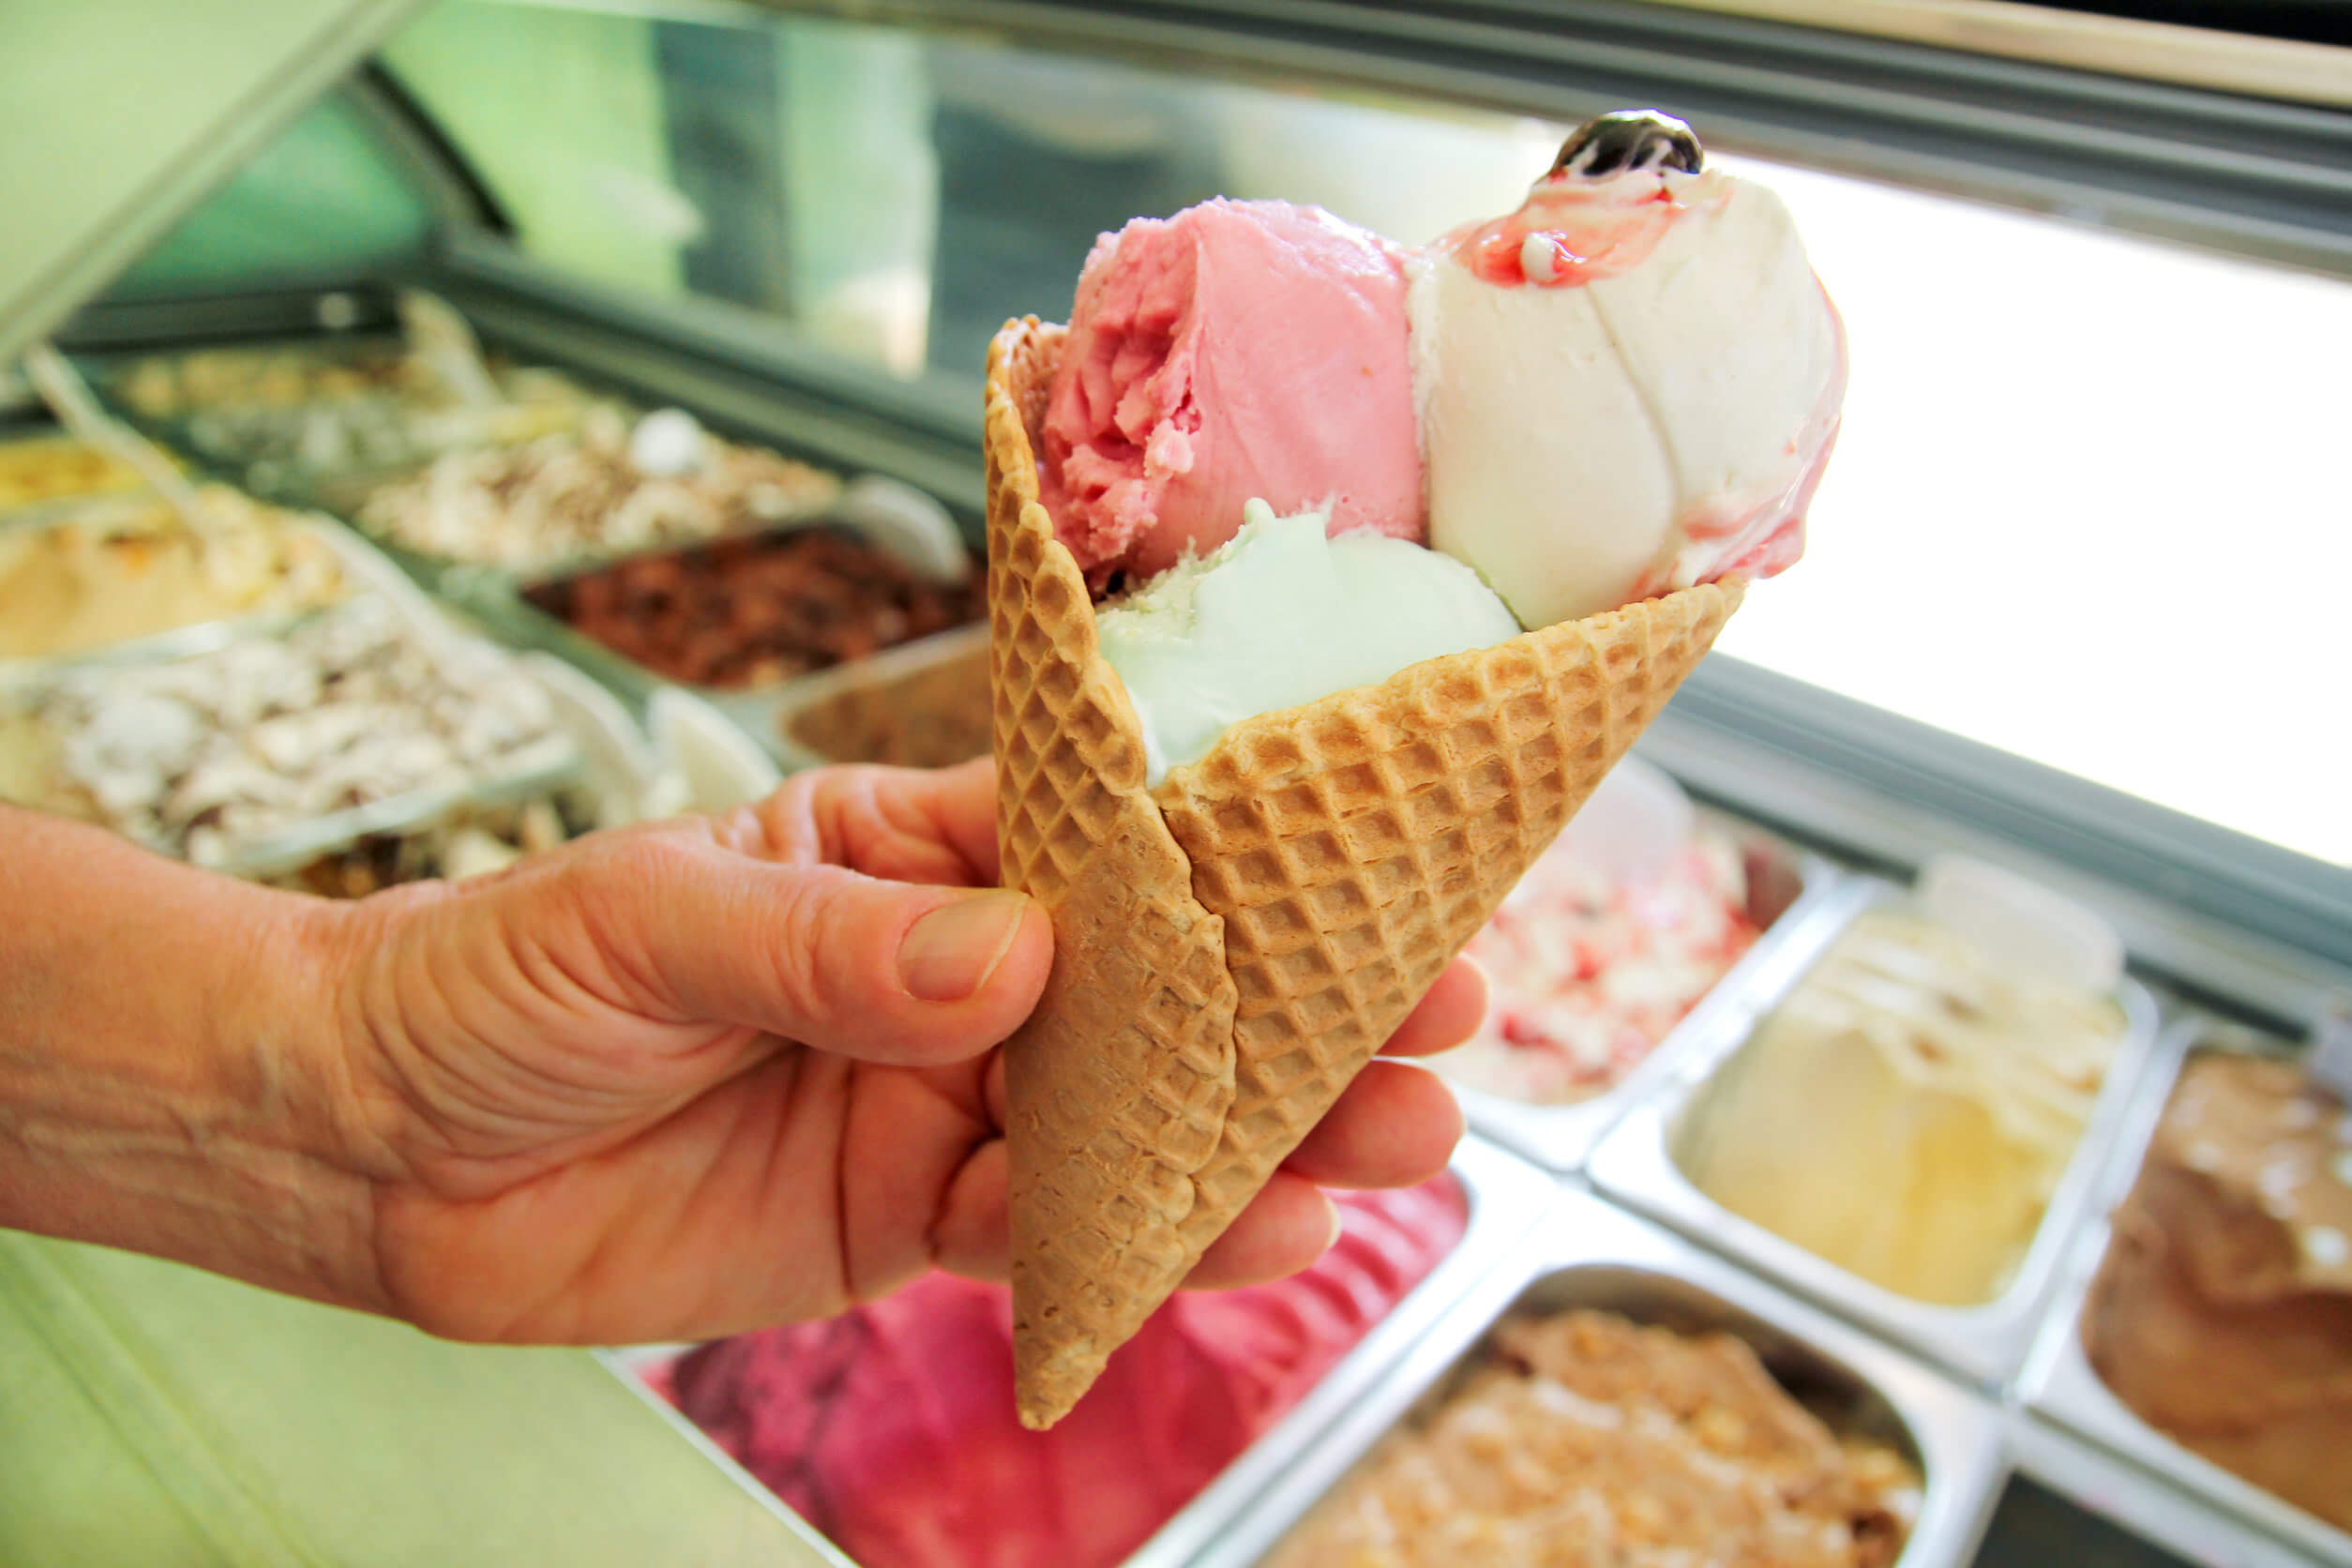 Entre los alimentos menos saludables están los helados